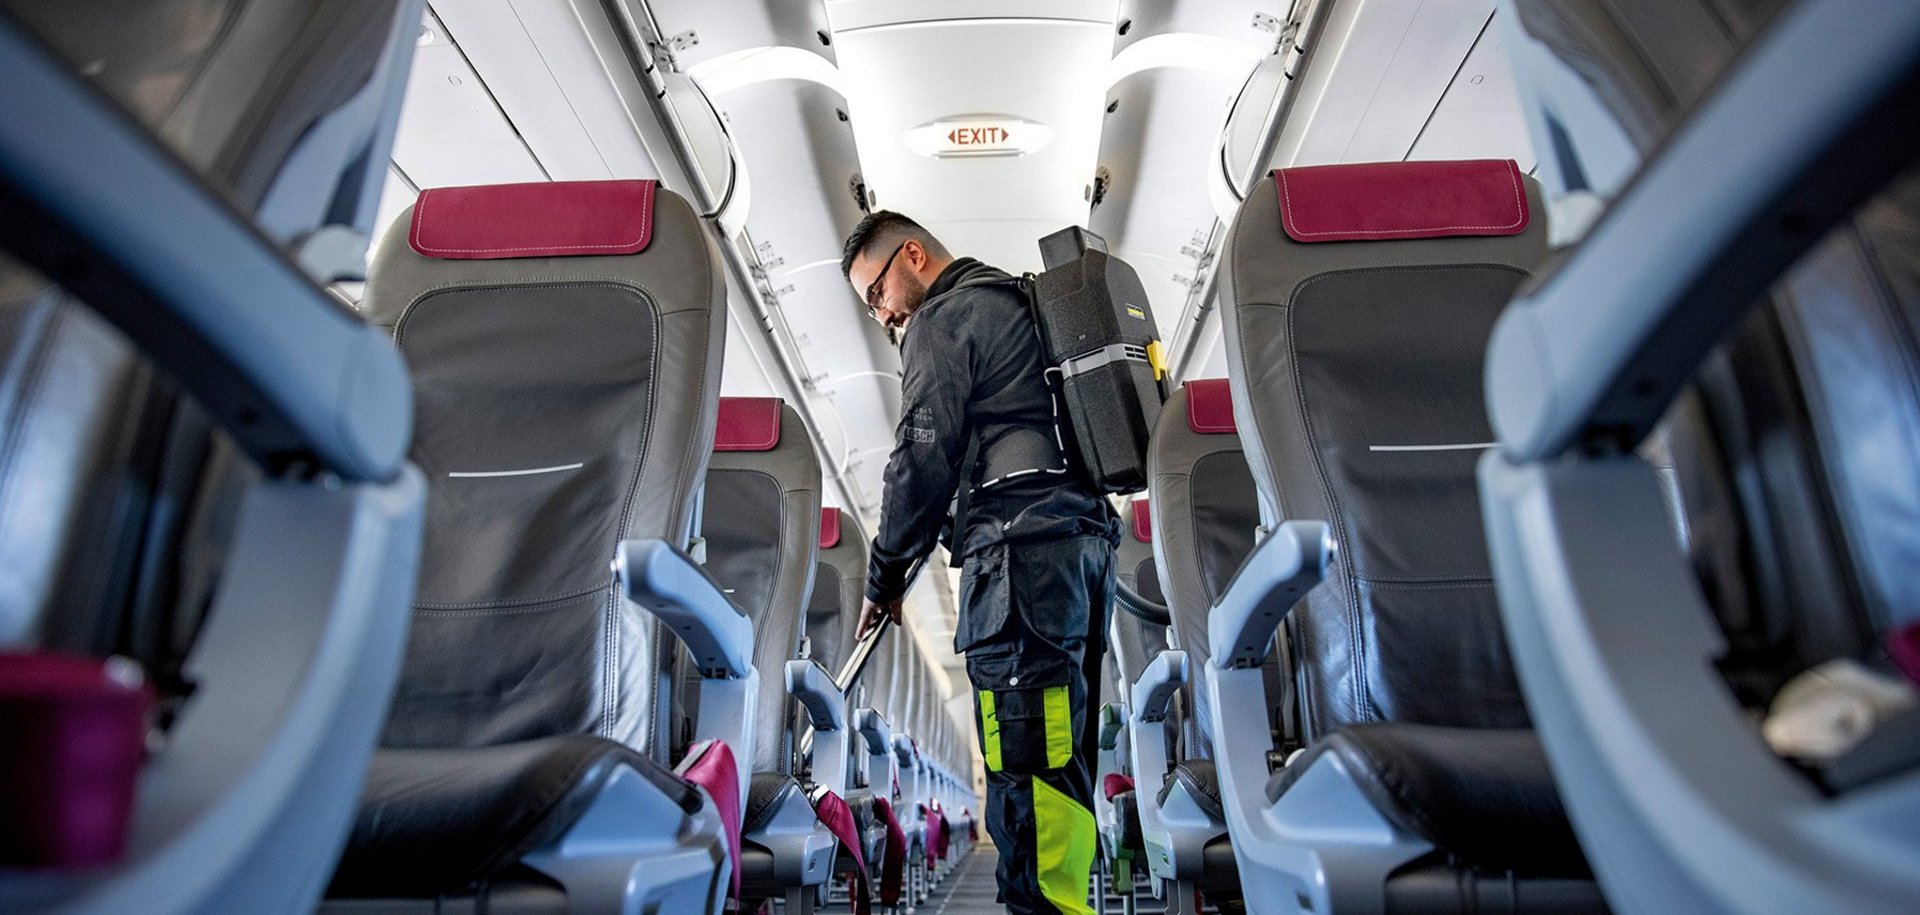 Kärcher Akkusauger bei der mobilen Reinigung in einem Flugzeug